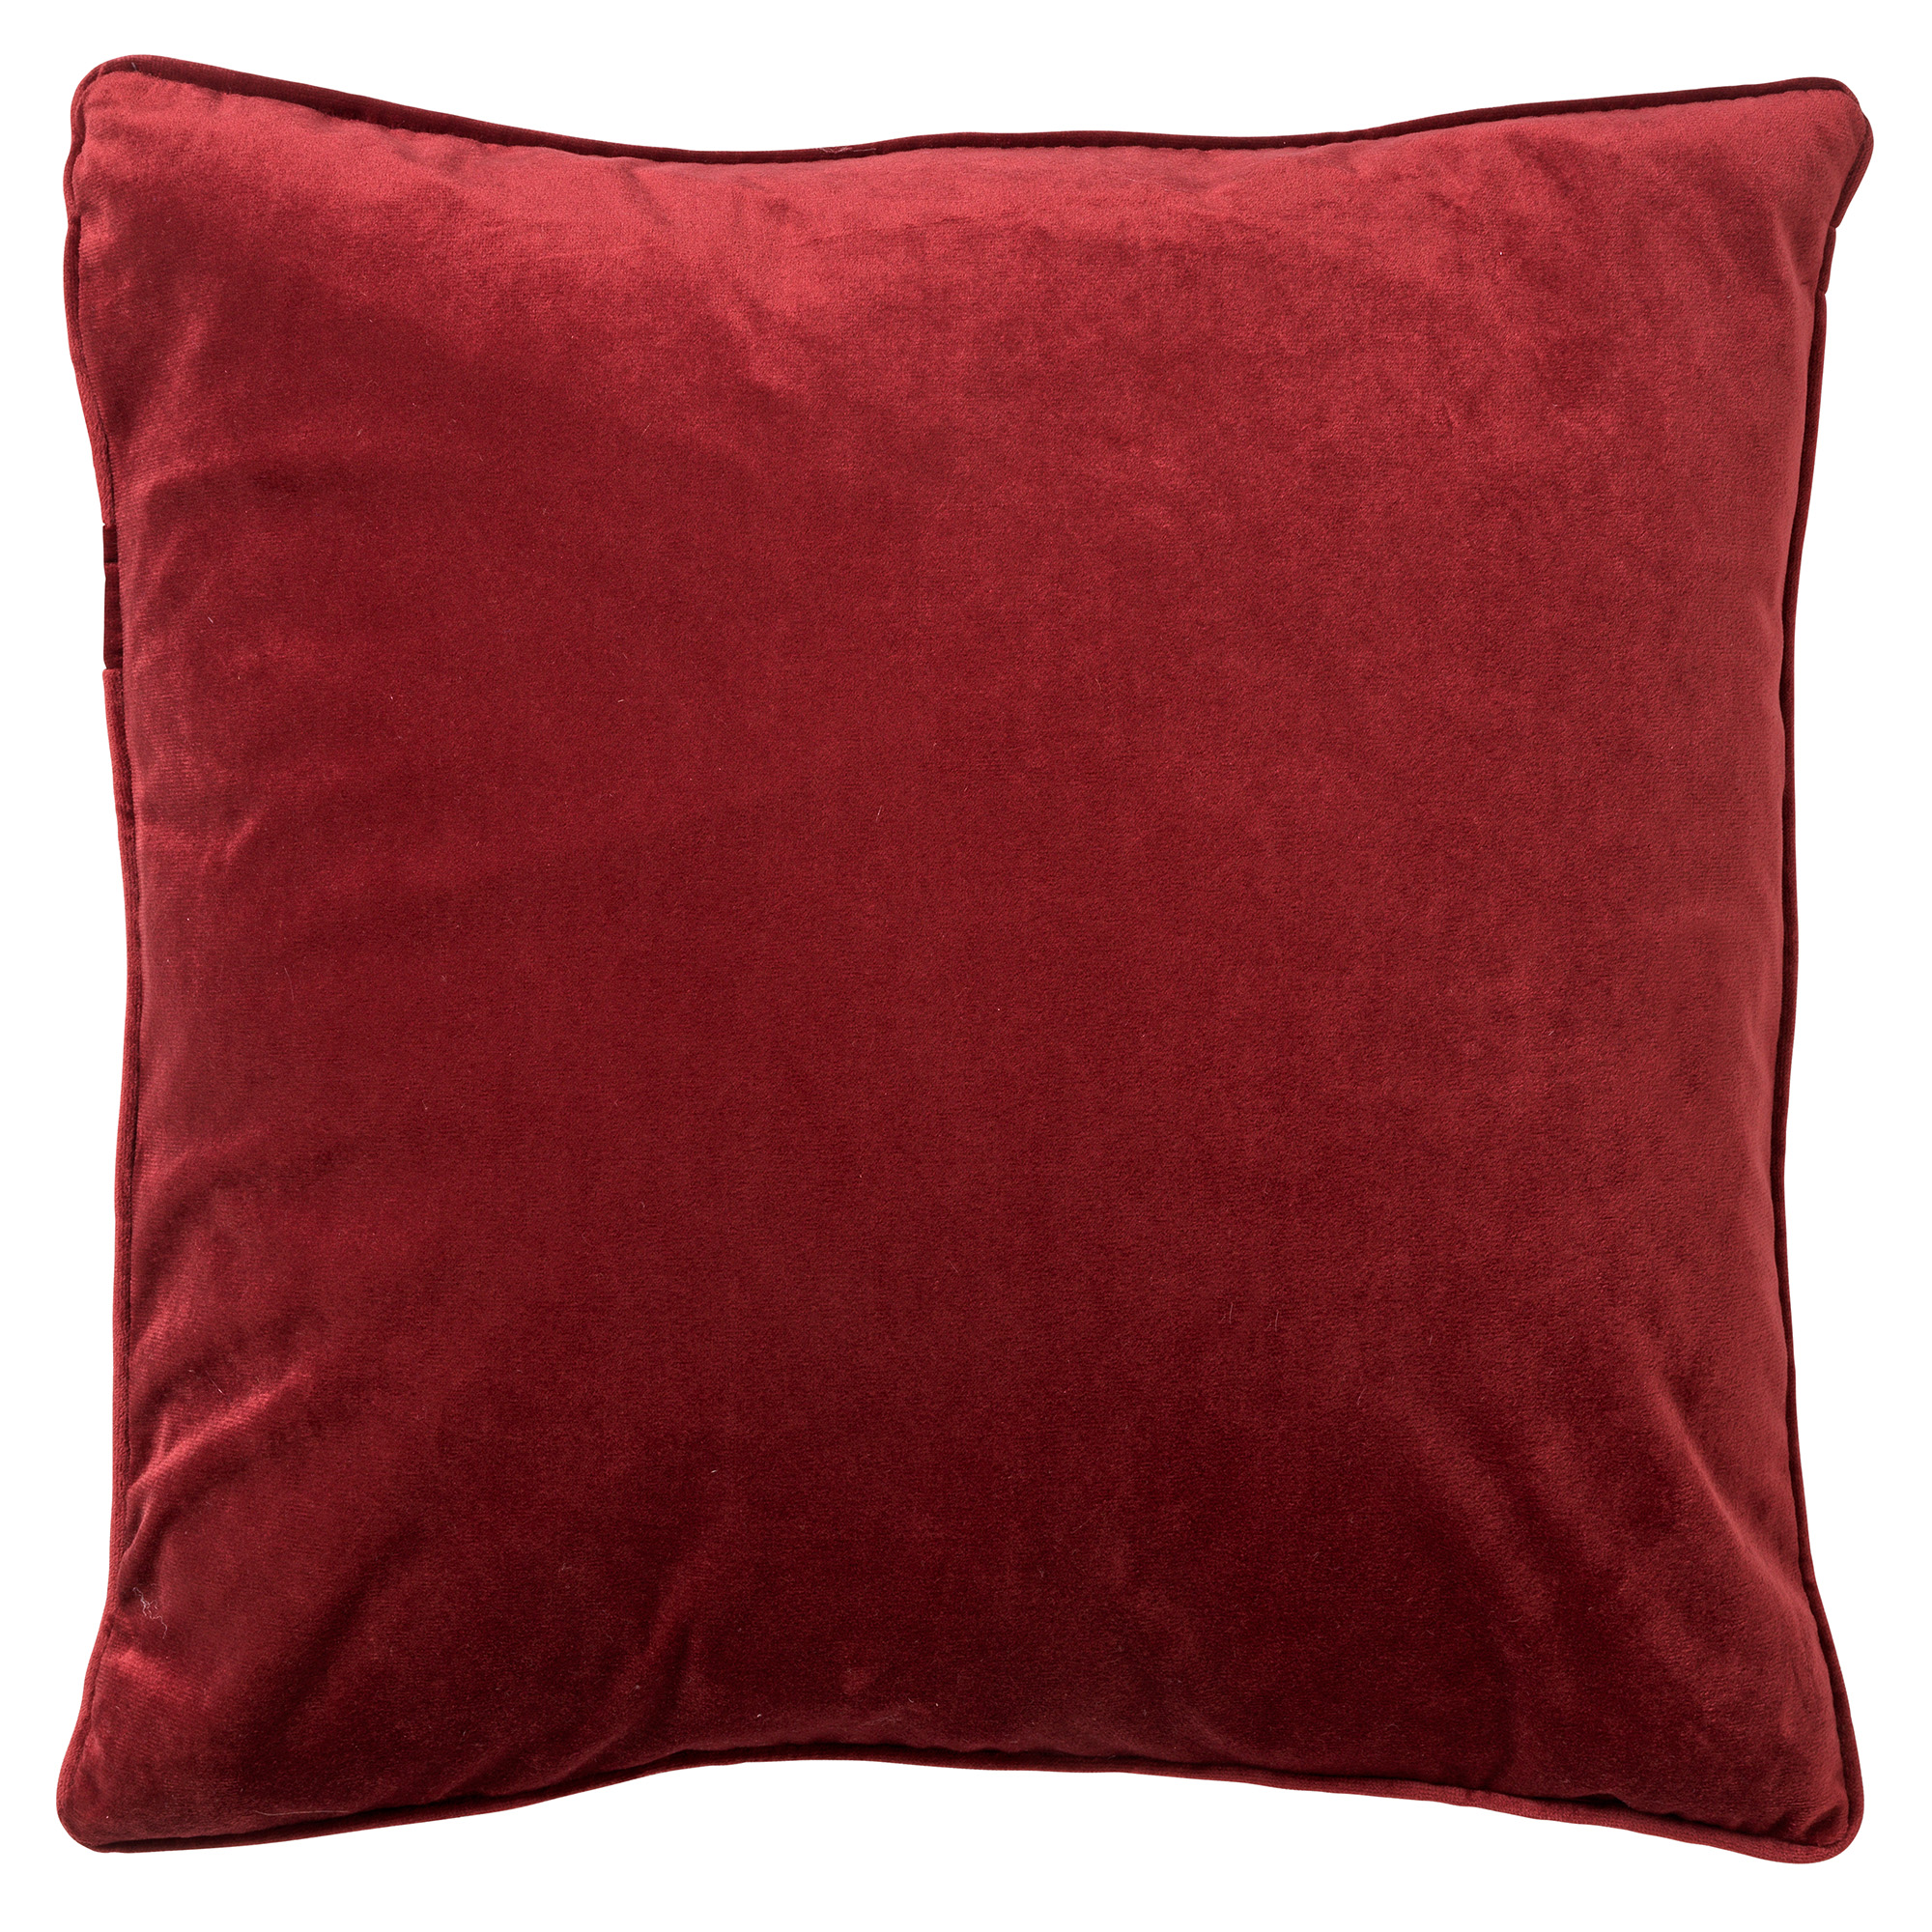 FINN - Cushion 60x60 cm Merlot - red 